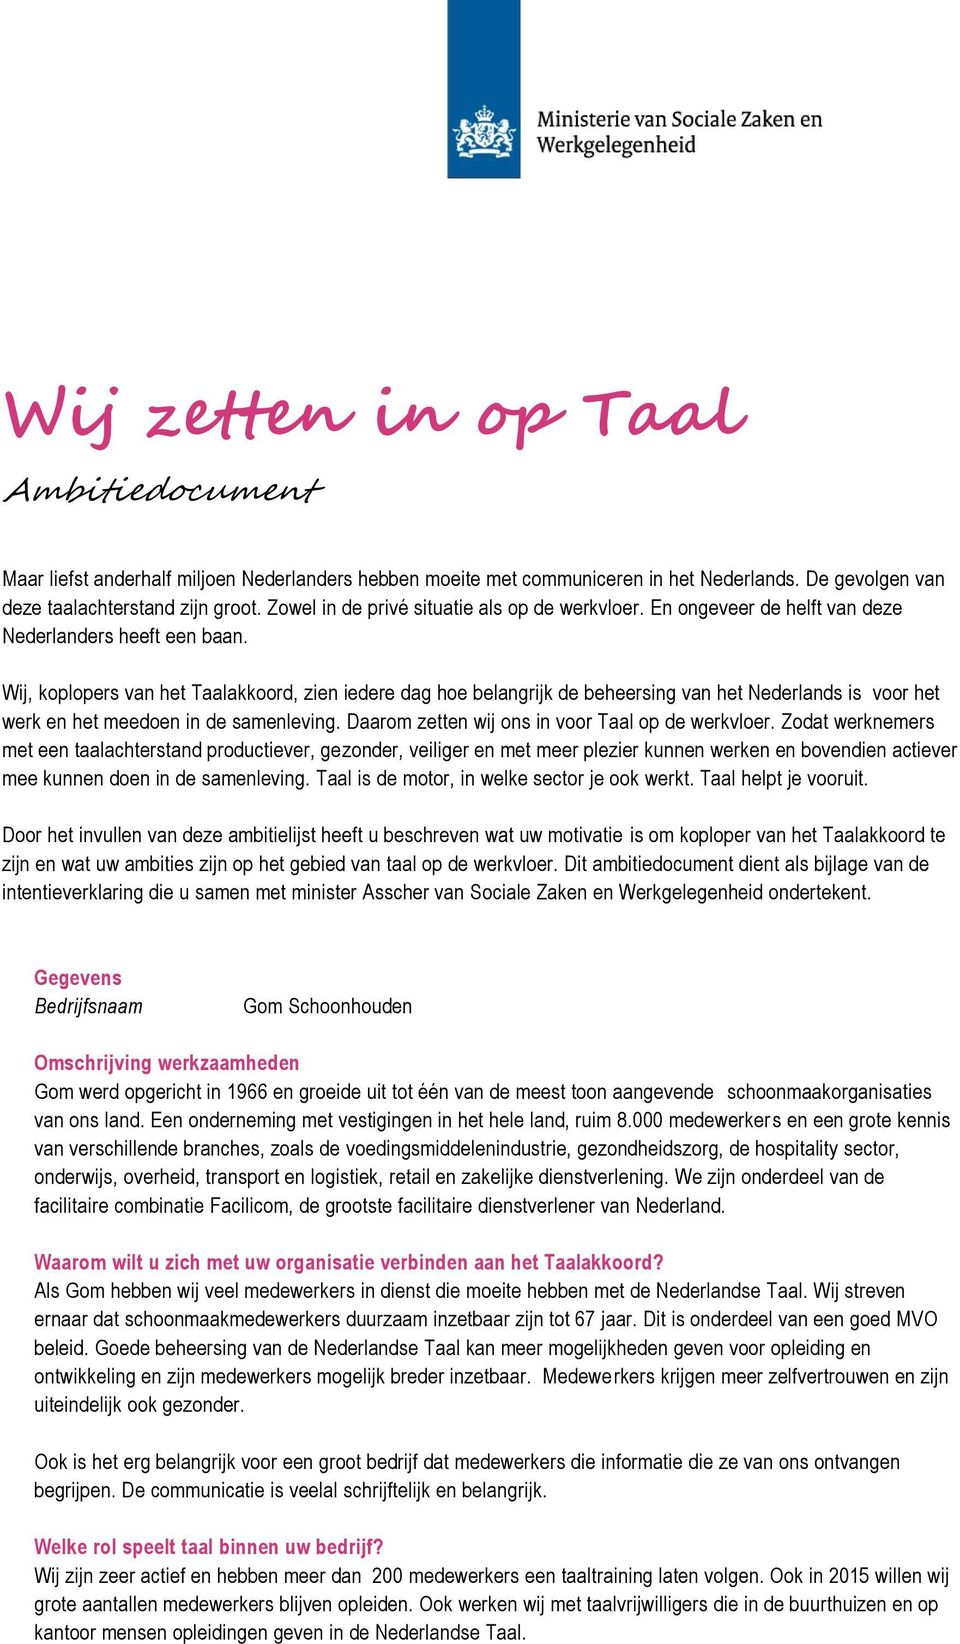 Wij, koplopers van het Taalakkoord, zien iedere dag hoe belangrijk de beheersing van het Nederlands is voor het werk en het meedoen in de samenleving.